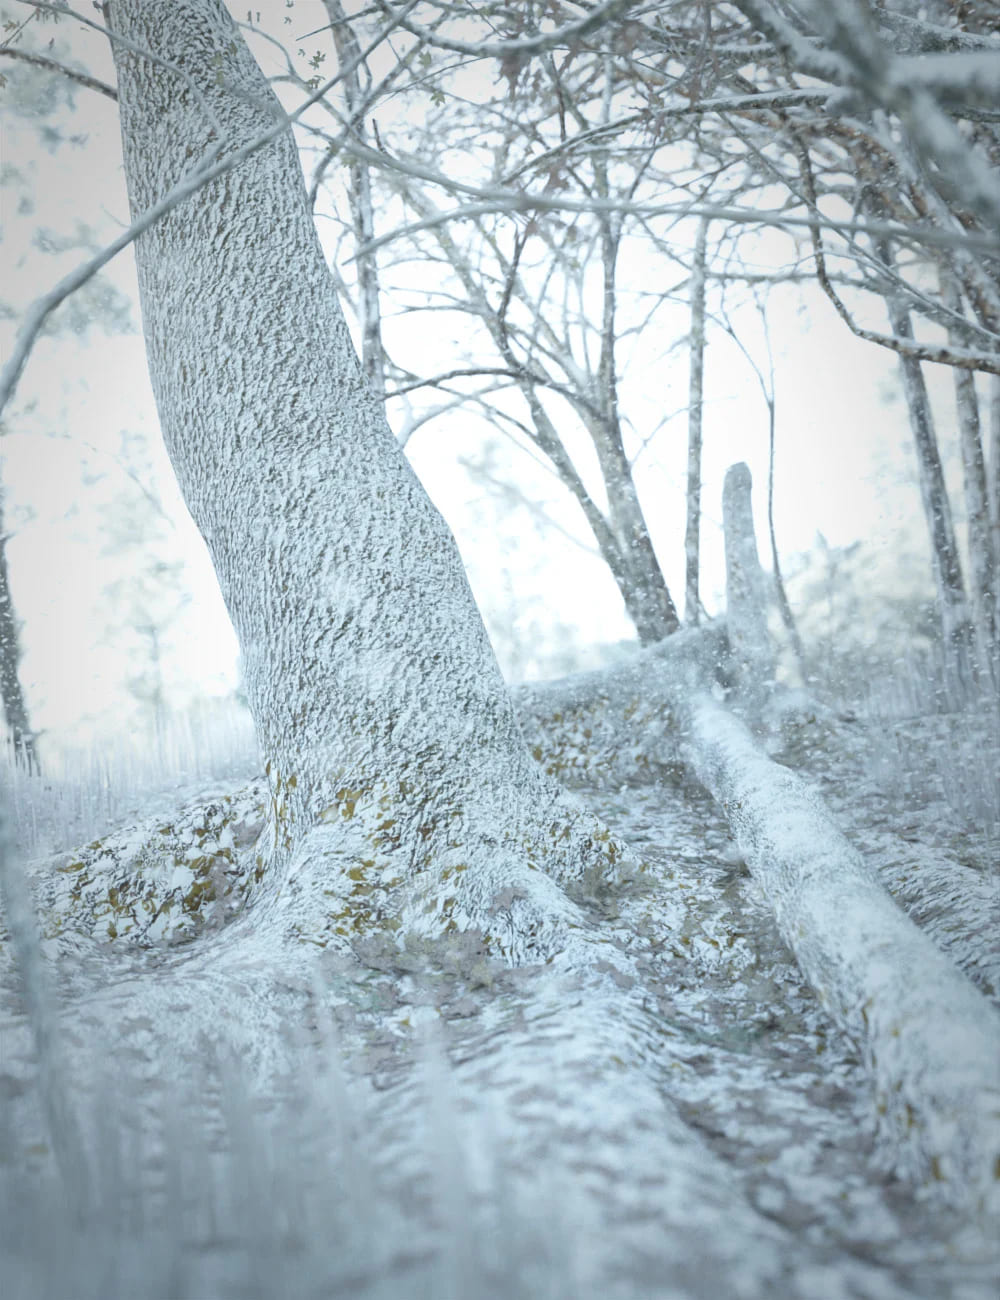 Fall Woods Vignette Winter Add-On_DAZ3DDL